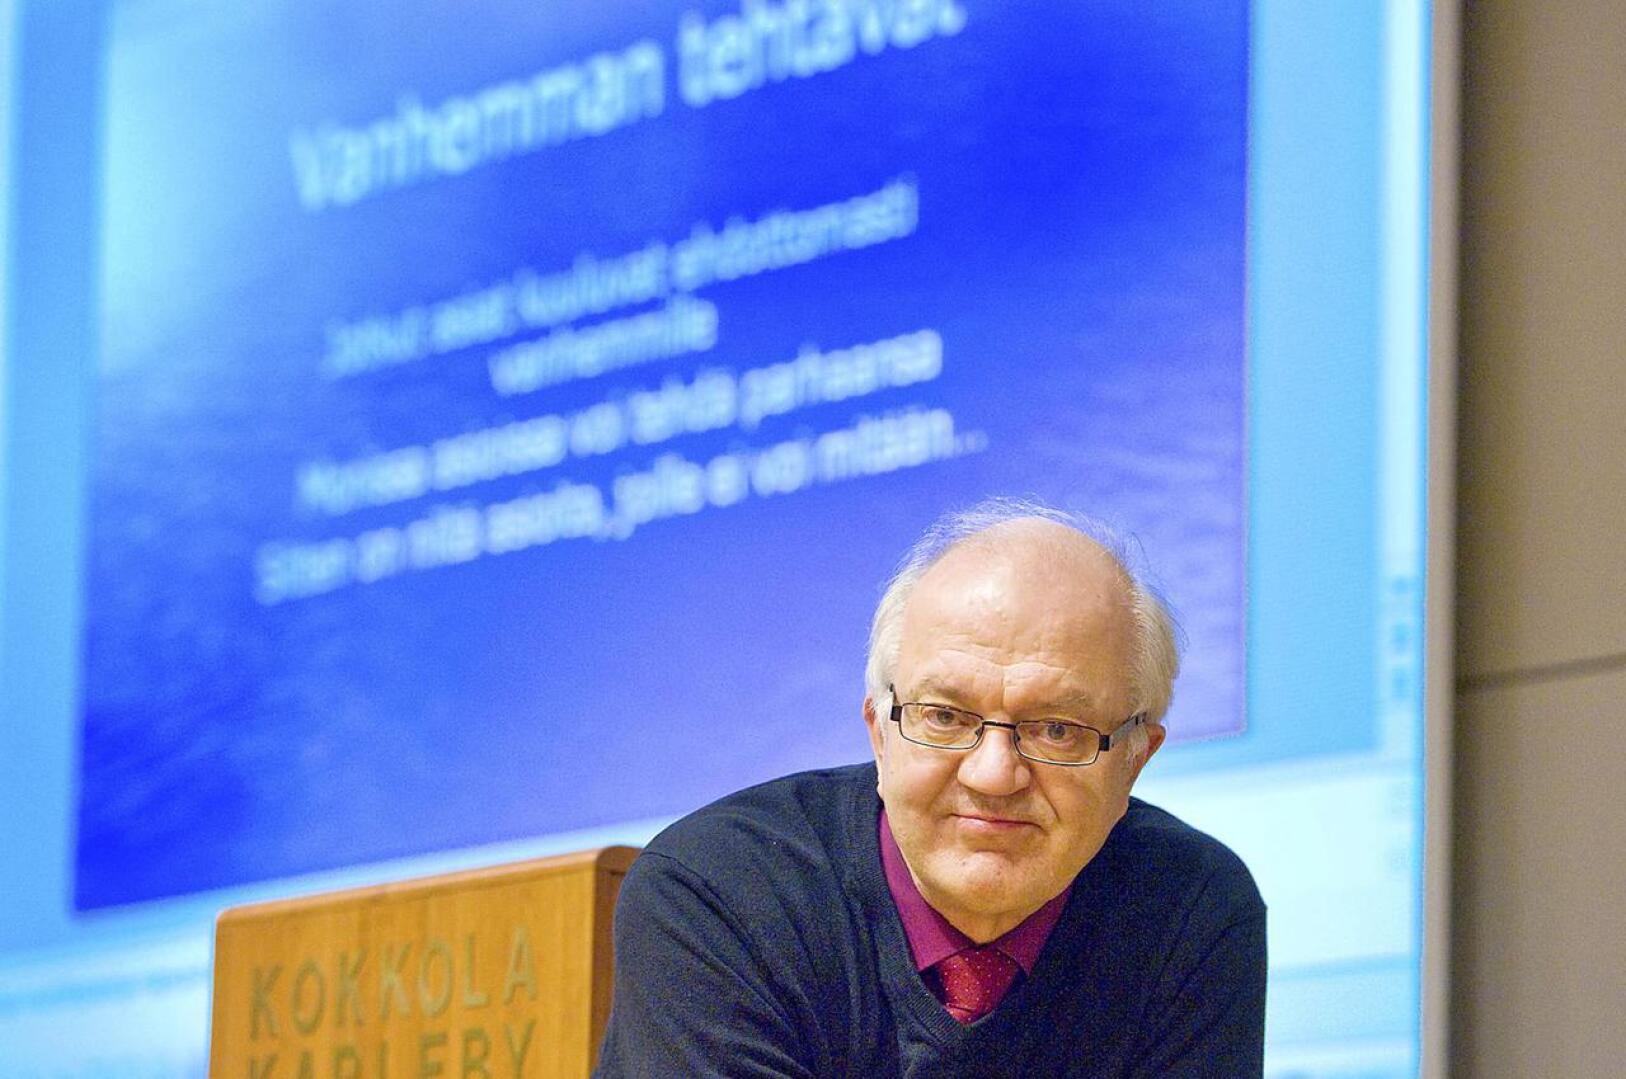 Jari Sinkkonen on lasten ja nuorten psyykkisen kehityksen asiantuntija ja arvostettu luennoitsija.